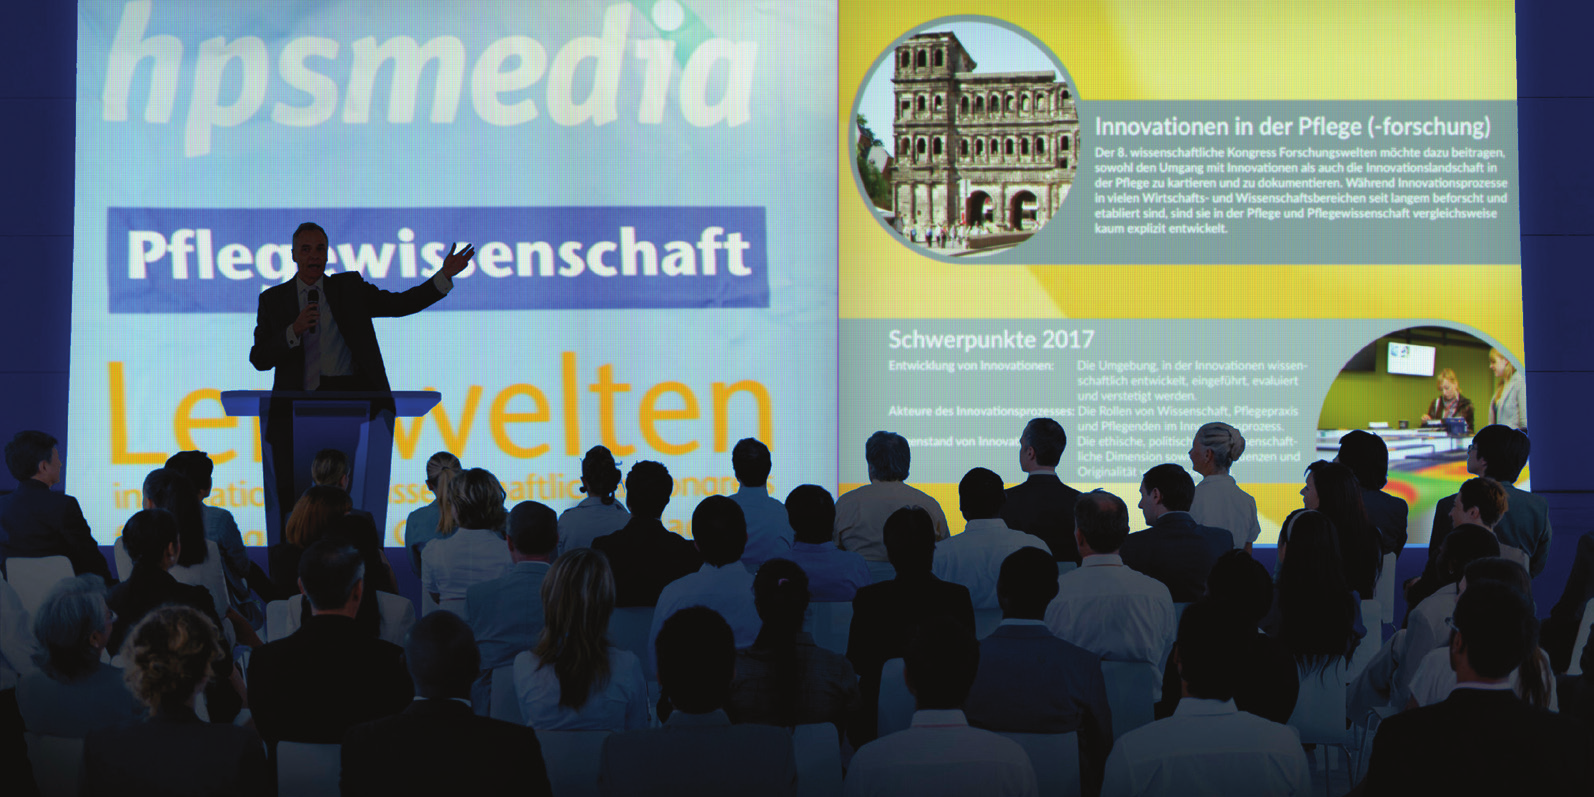 Der Verlag hpsmedia mit der Zeitschrift Pflegewissenschaft ist ein führender Anbieter von Fachinformationen im gesamten deutschsprachigen Raum.